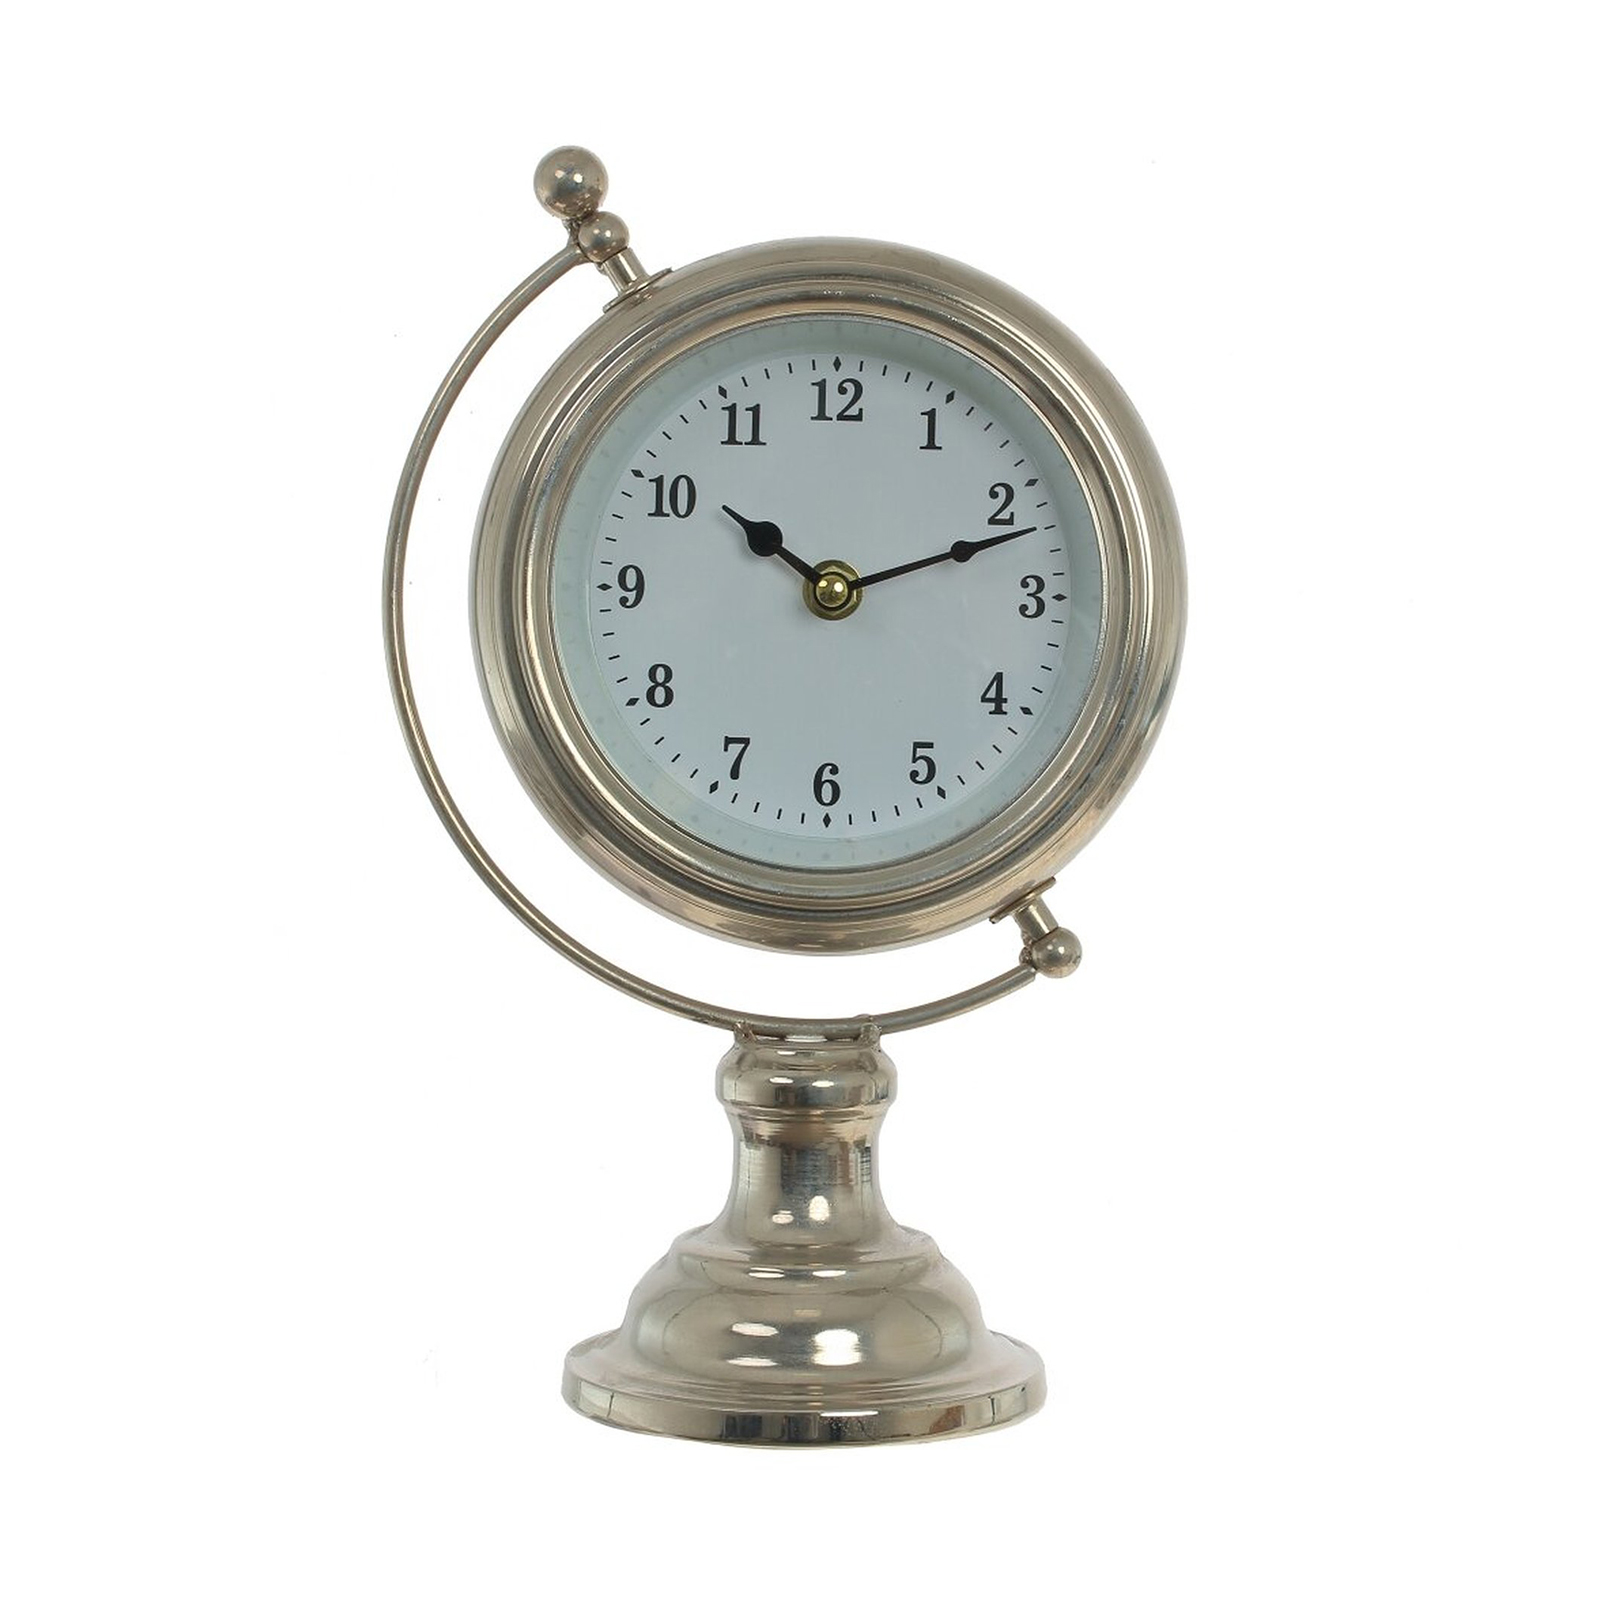 Часы 24 вольта. Настольные часы Kairos tb002w. WS-1003 статуэтка-часы Атлант. Часы настольные декоративные. Часы настольные Сургутнефтегаз.